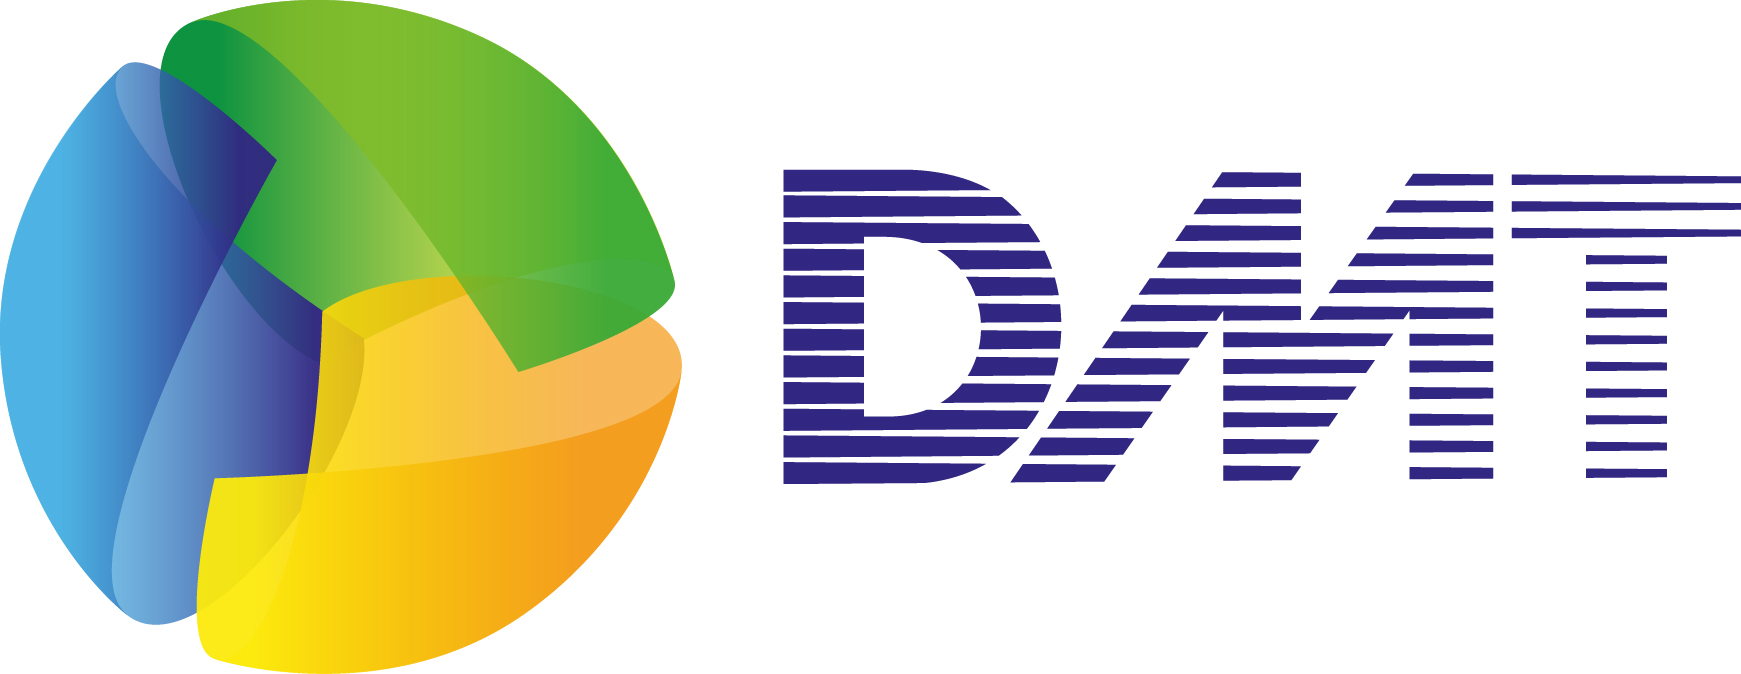 DMT opent kantoor in de VS